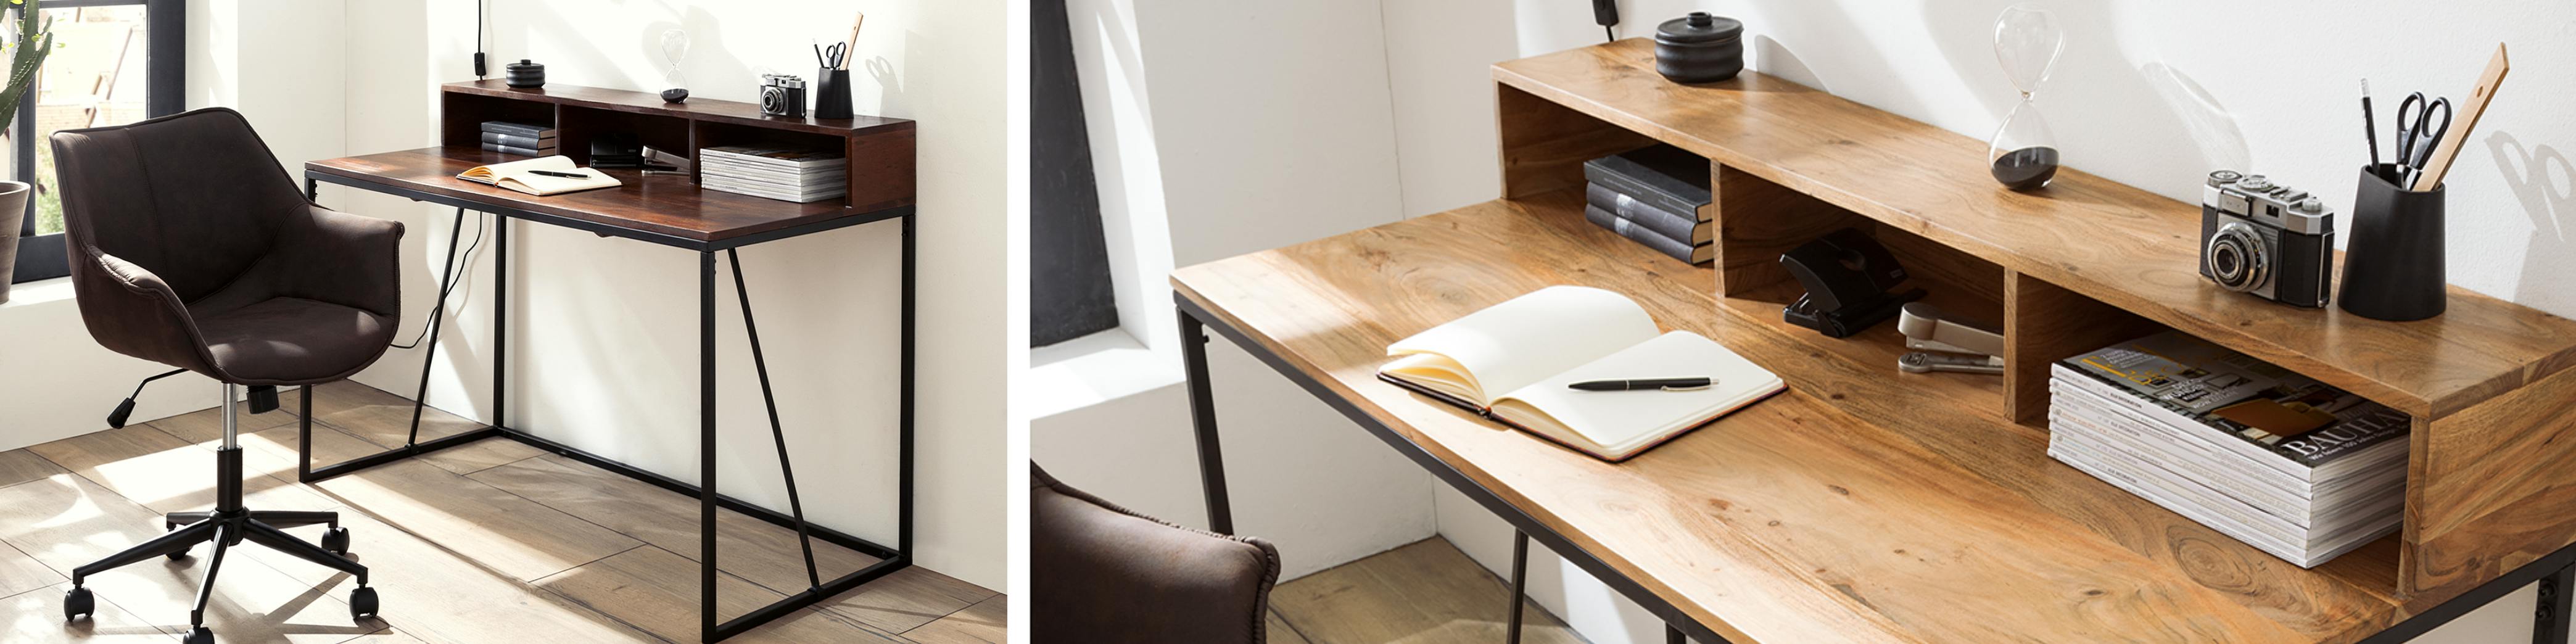 Gepolsterter Stuhl und Schreibtisch aus Holz seitlich zum Fenster aufgestellt mit aufgeschlagenem Notizbuch